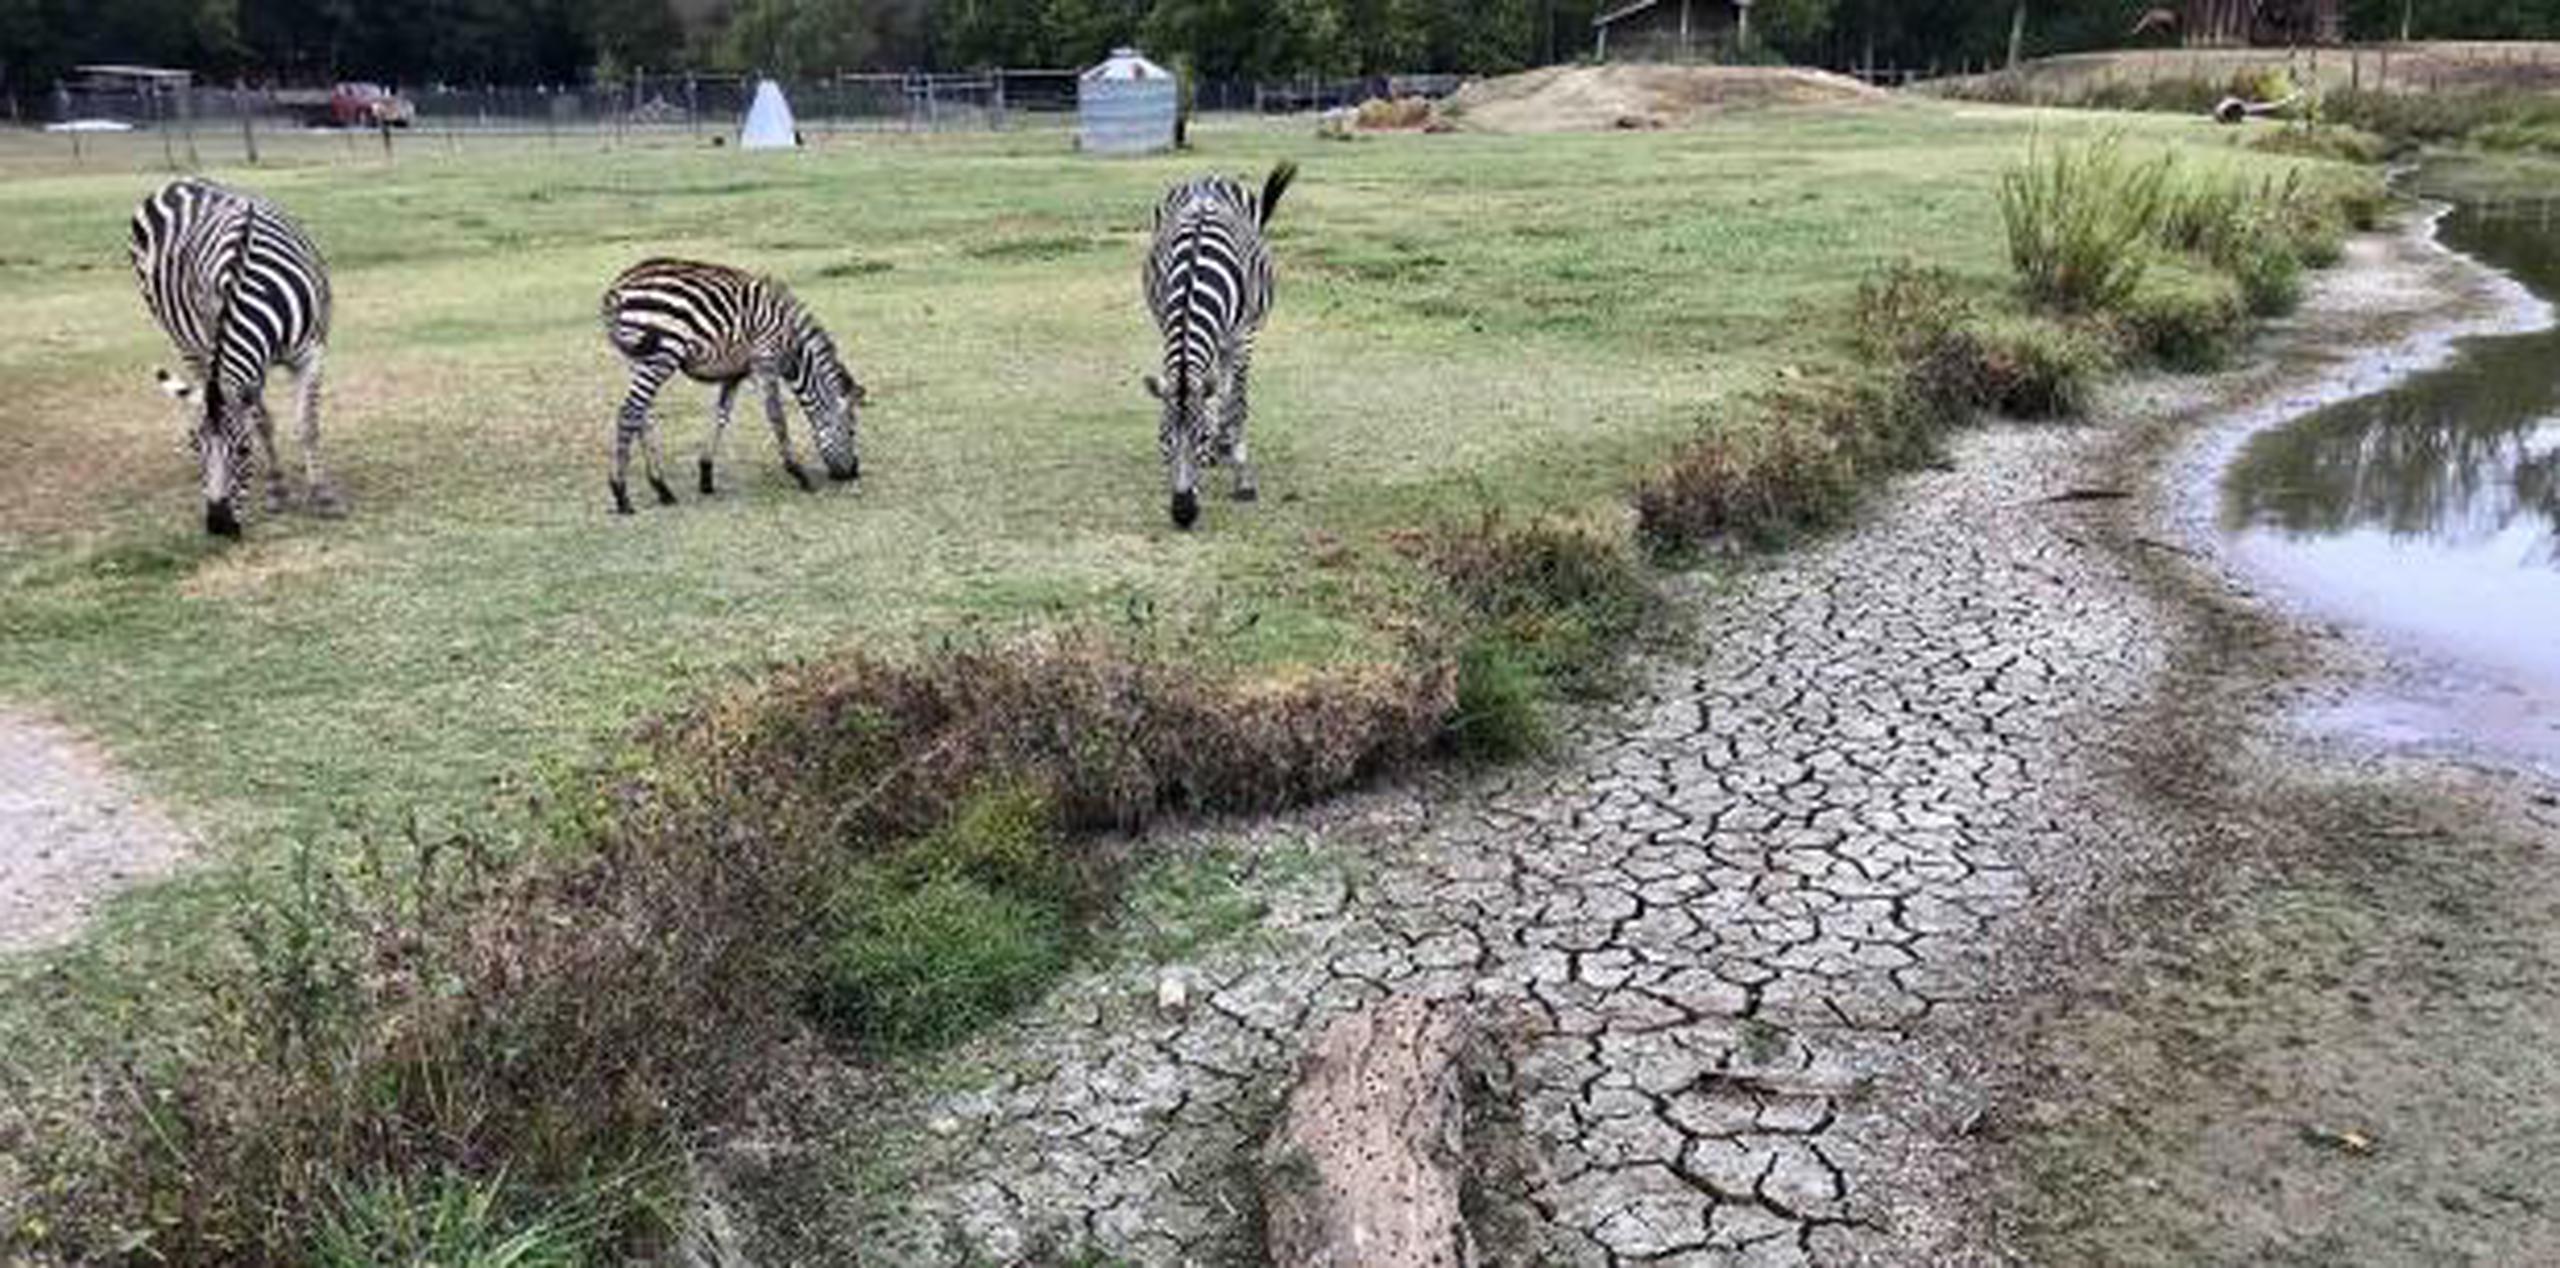 Scott Allen, dueño de la granja Pettit Creek, señaló que antes, las cebras y sus otros animales tenían agua de fuentes naturales, pero ahora depende del agua de las cañerías municipales de Cartersville, Georgia, para dar a los animales. (AP / Jeff Martin)